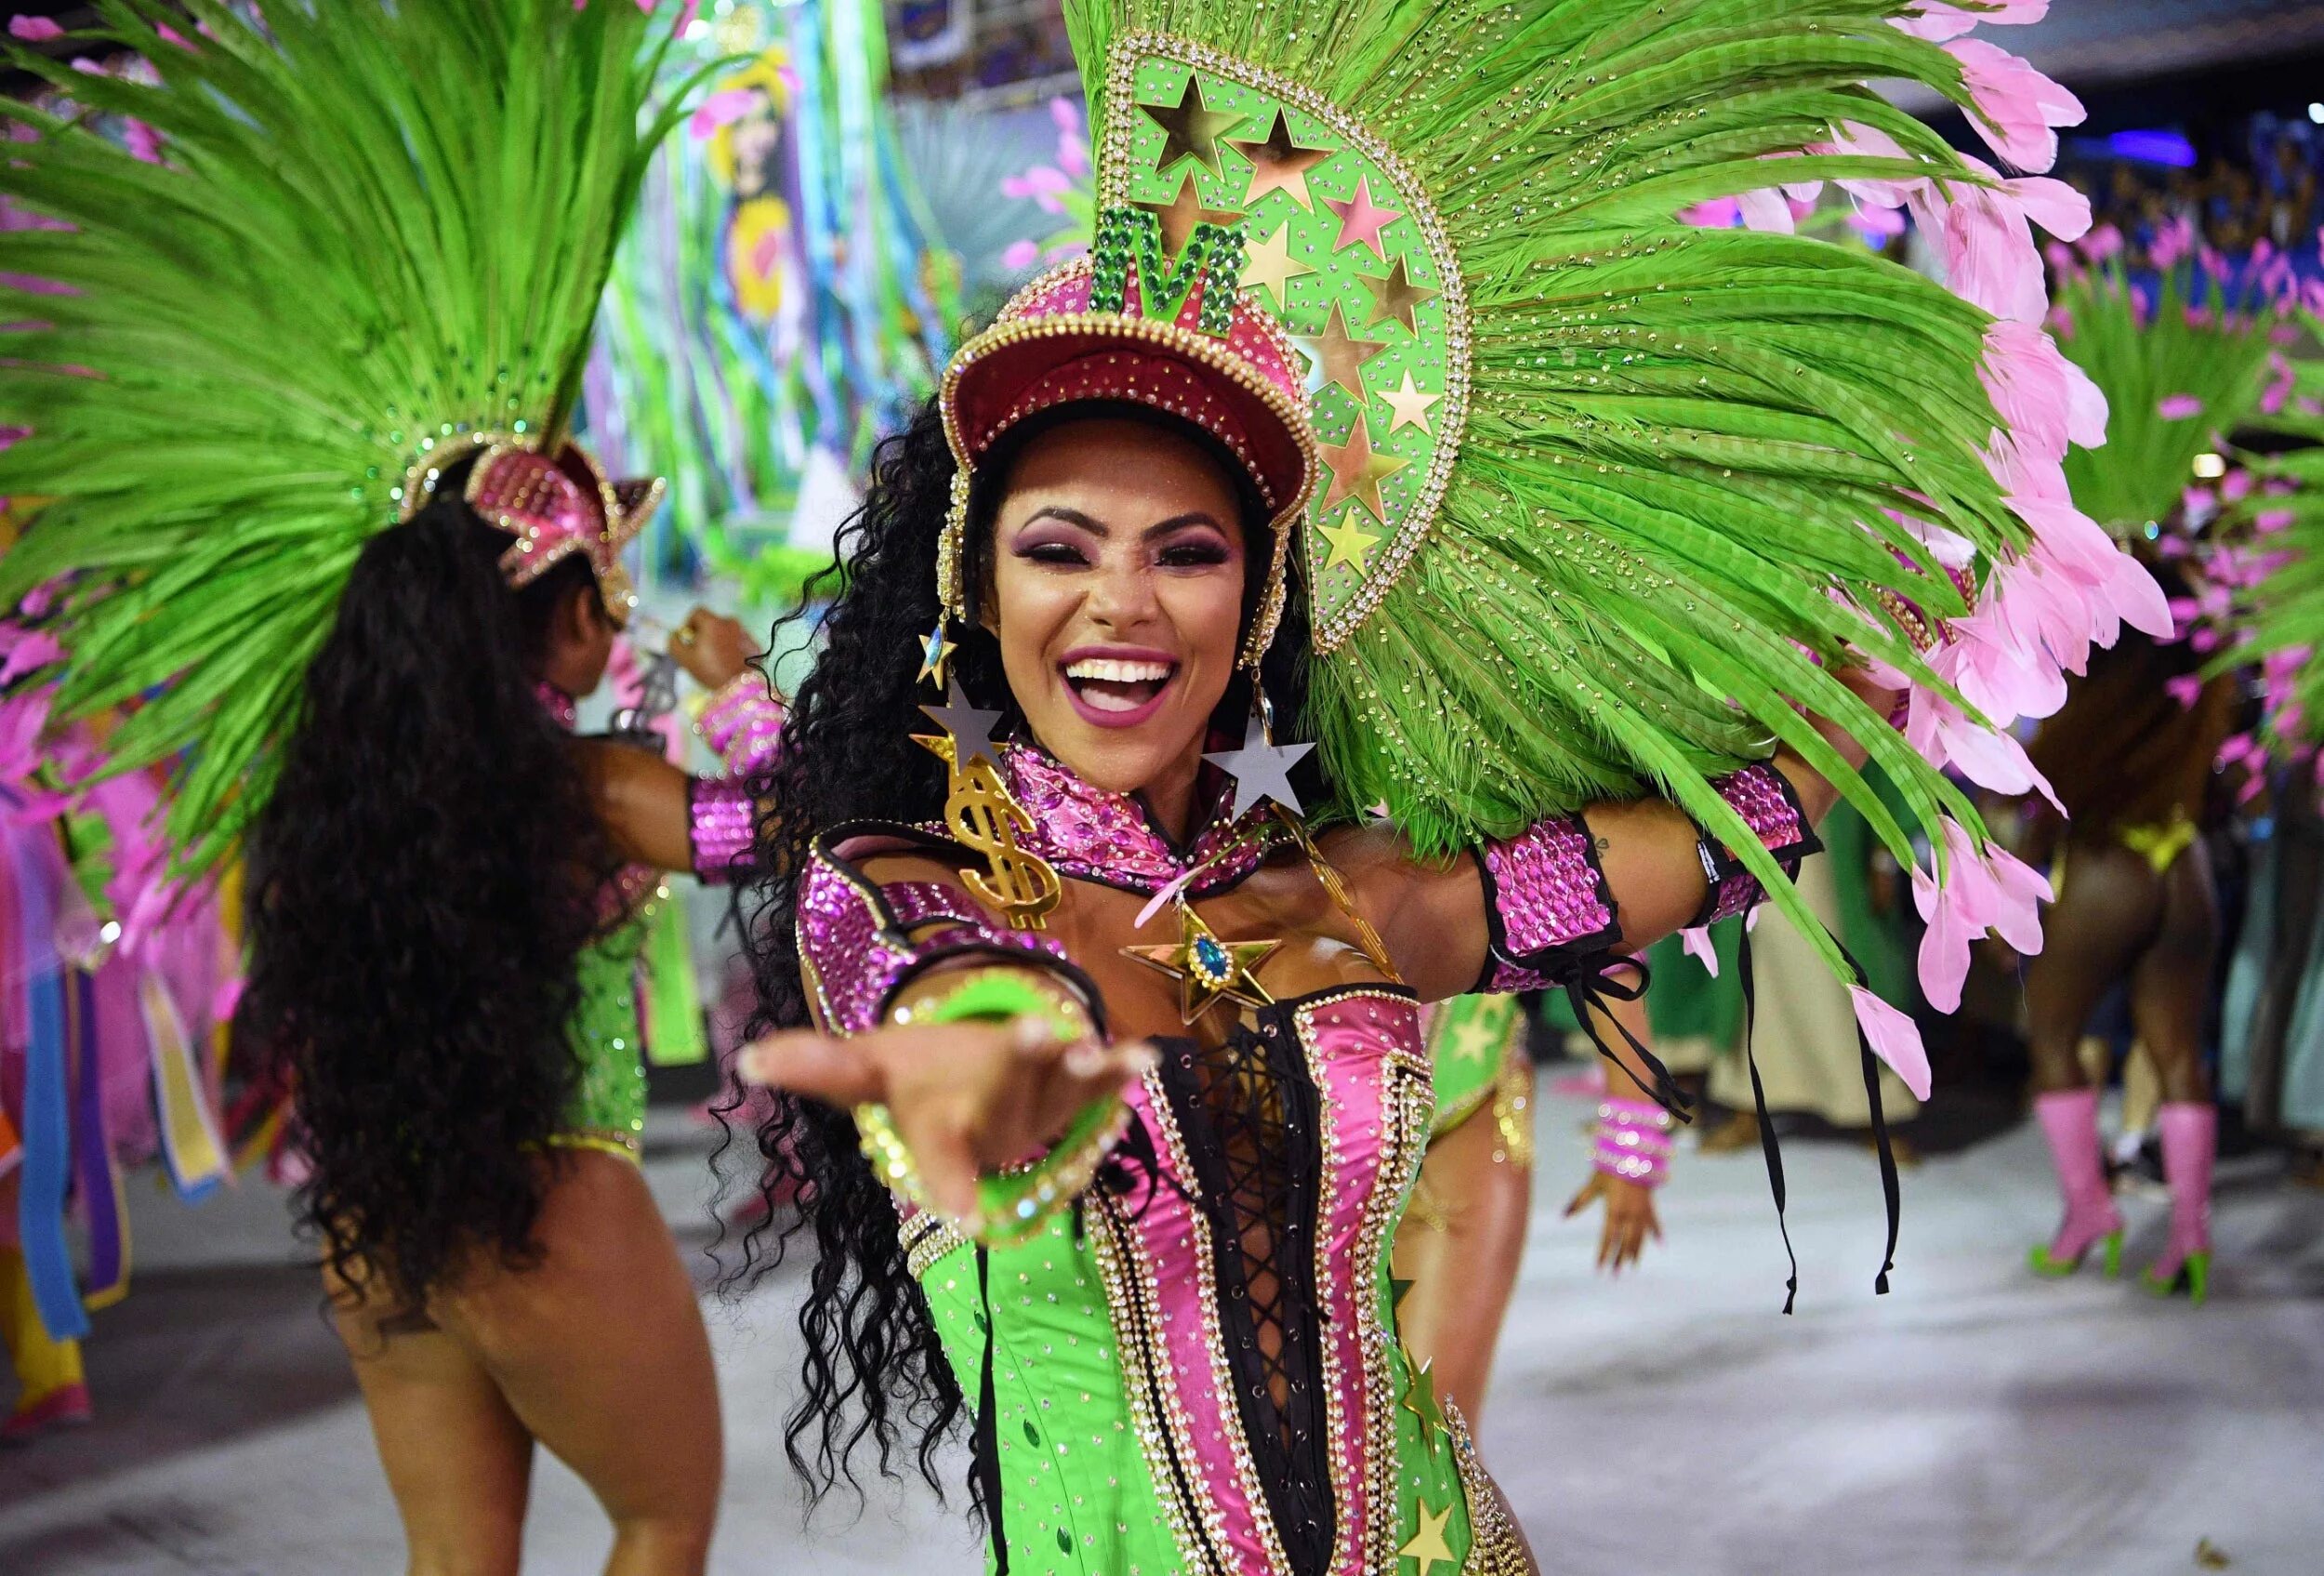 Бразильские фонки 1 час. Карнавал в Рио-де-Жанейро. Бразилия фестиваль Рио де Жанейро. Бразилия парад в Рио де Жанейро. Карнавал в Рио-де-Жанейро (Rio Carnival) - Бразилия.